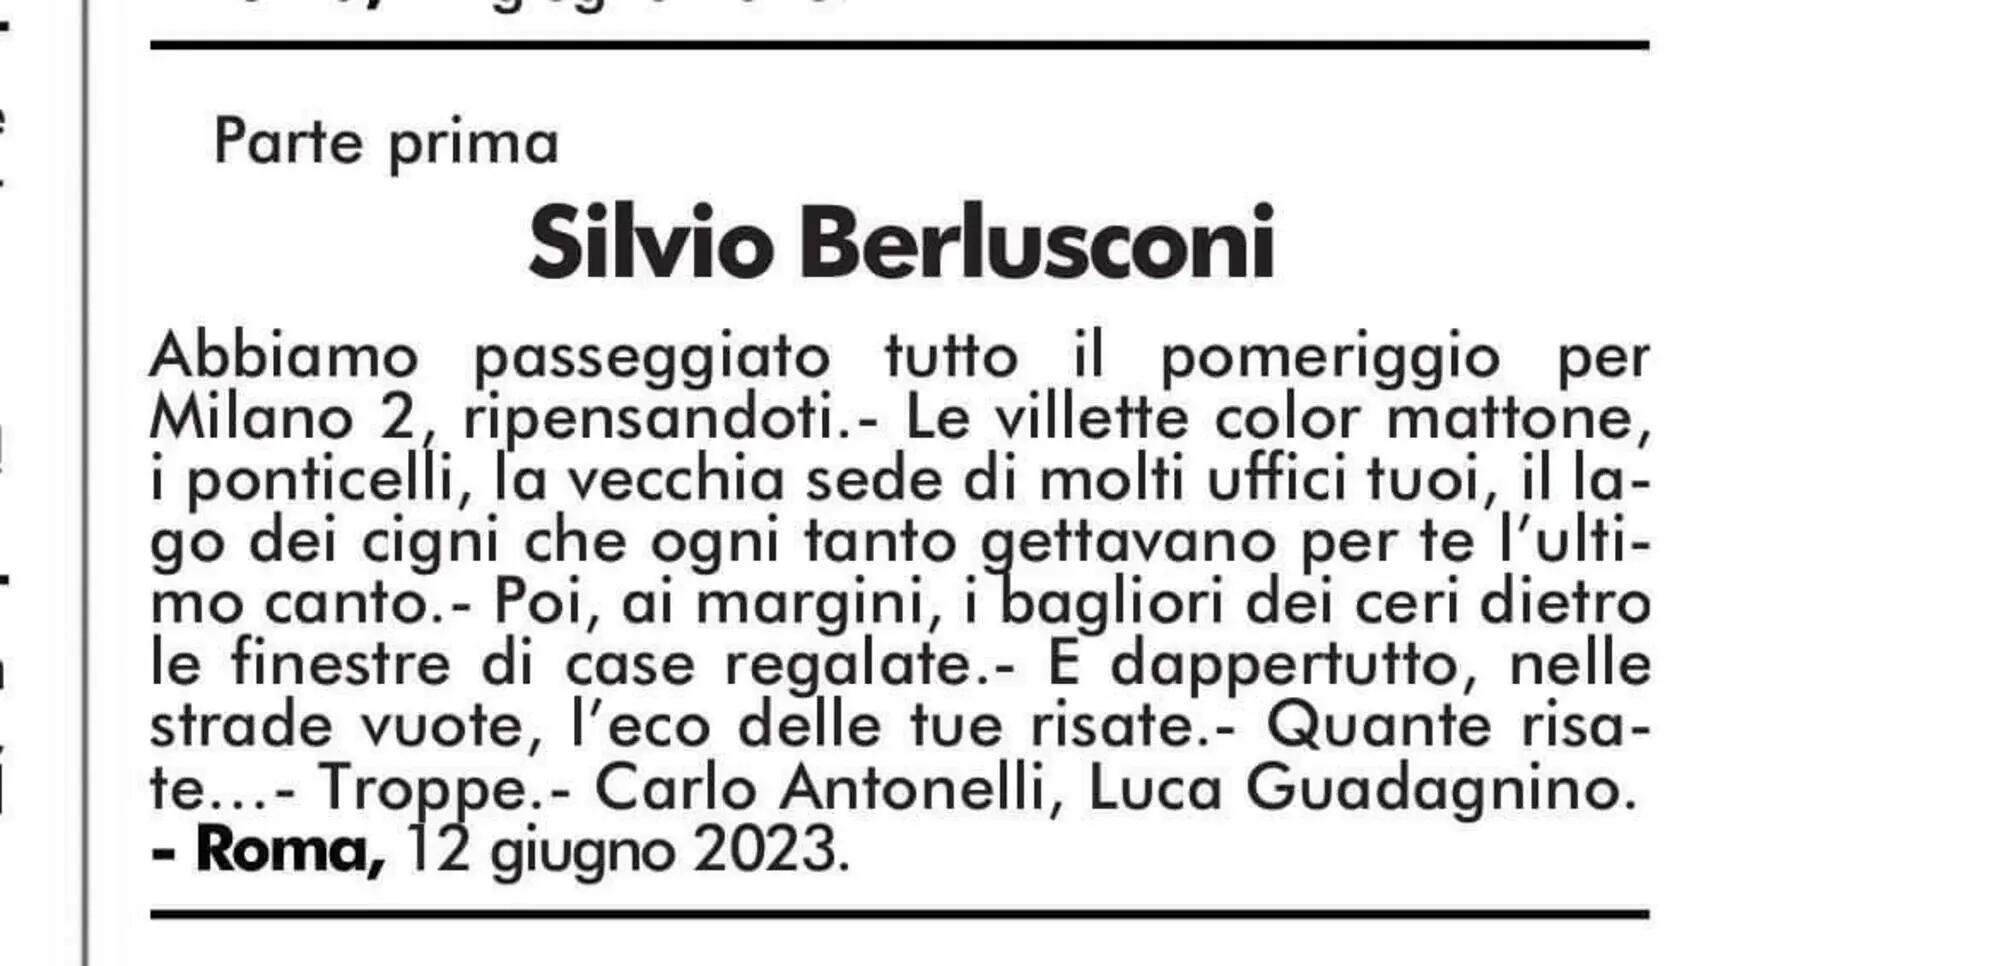 La prima parte del necrologio di Carlo Antonelli e Luca Guadagnino per Silvio Berlusconi